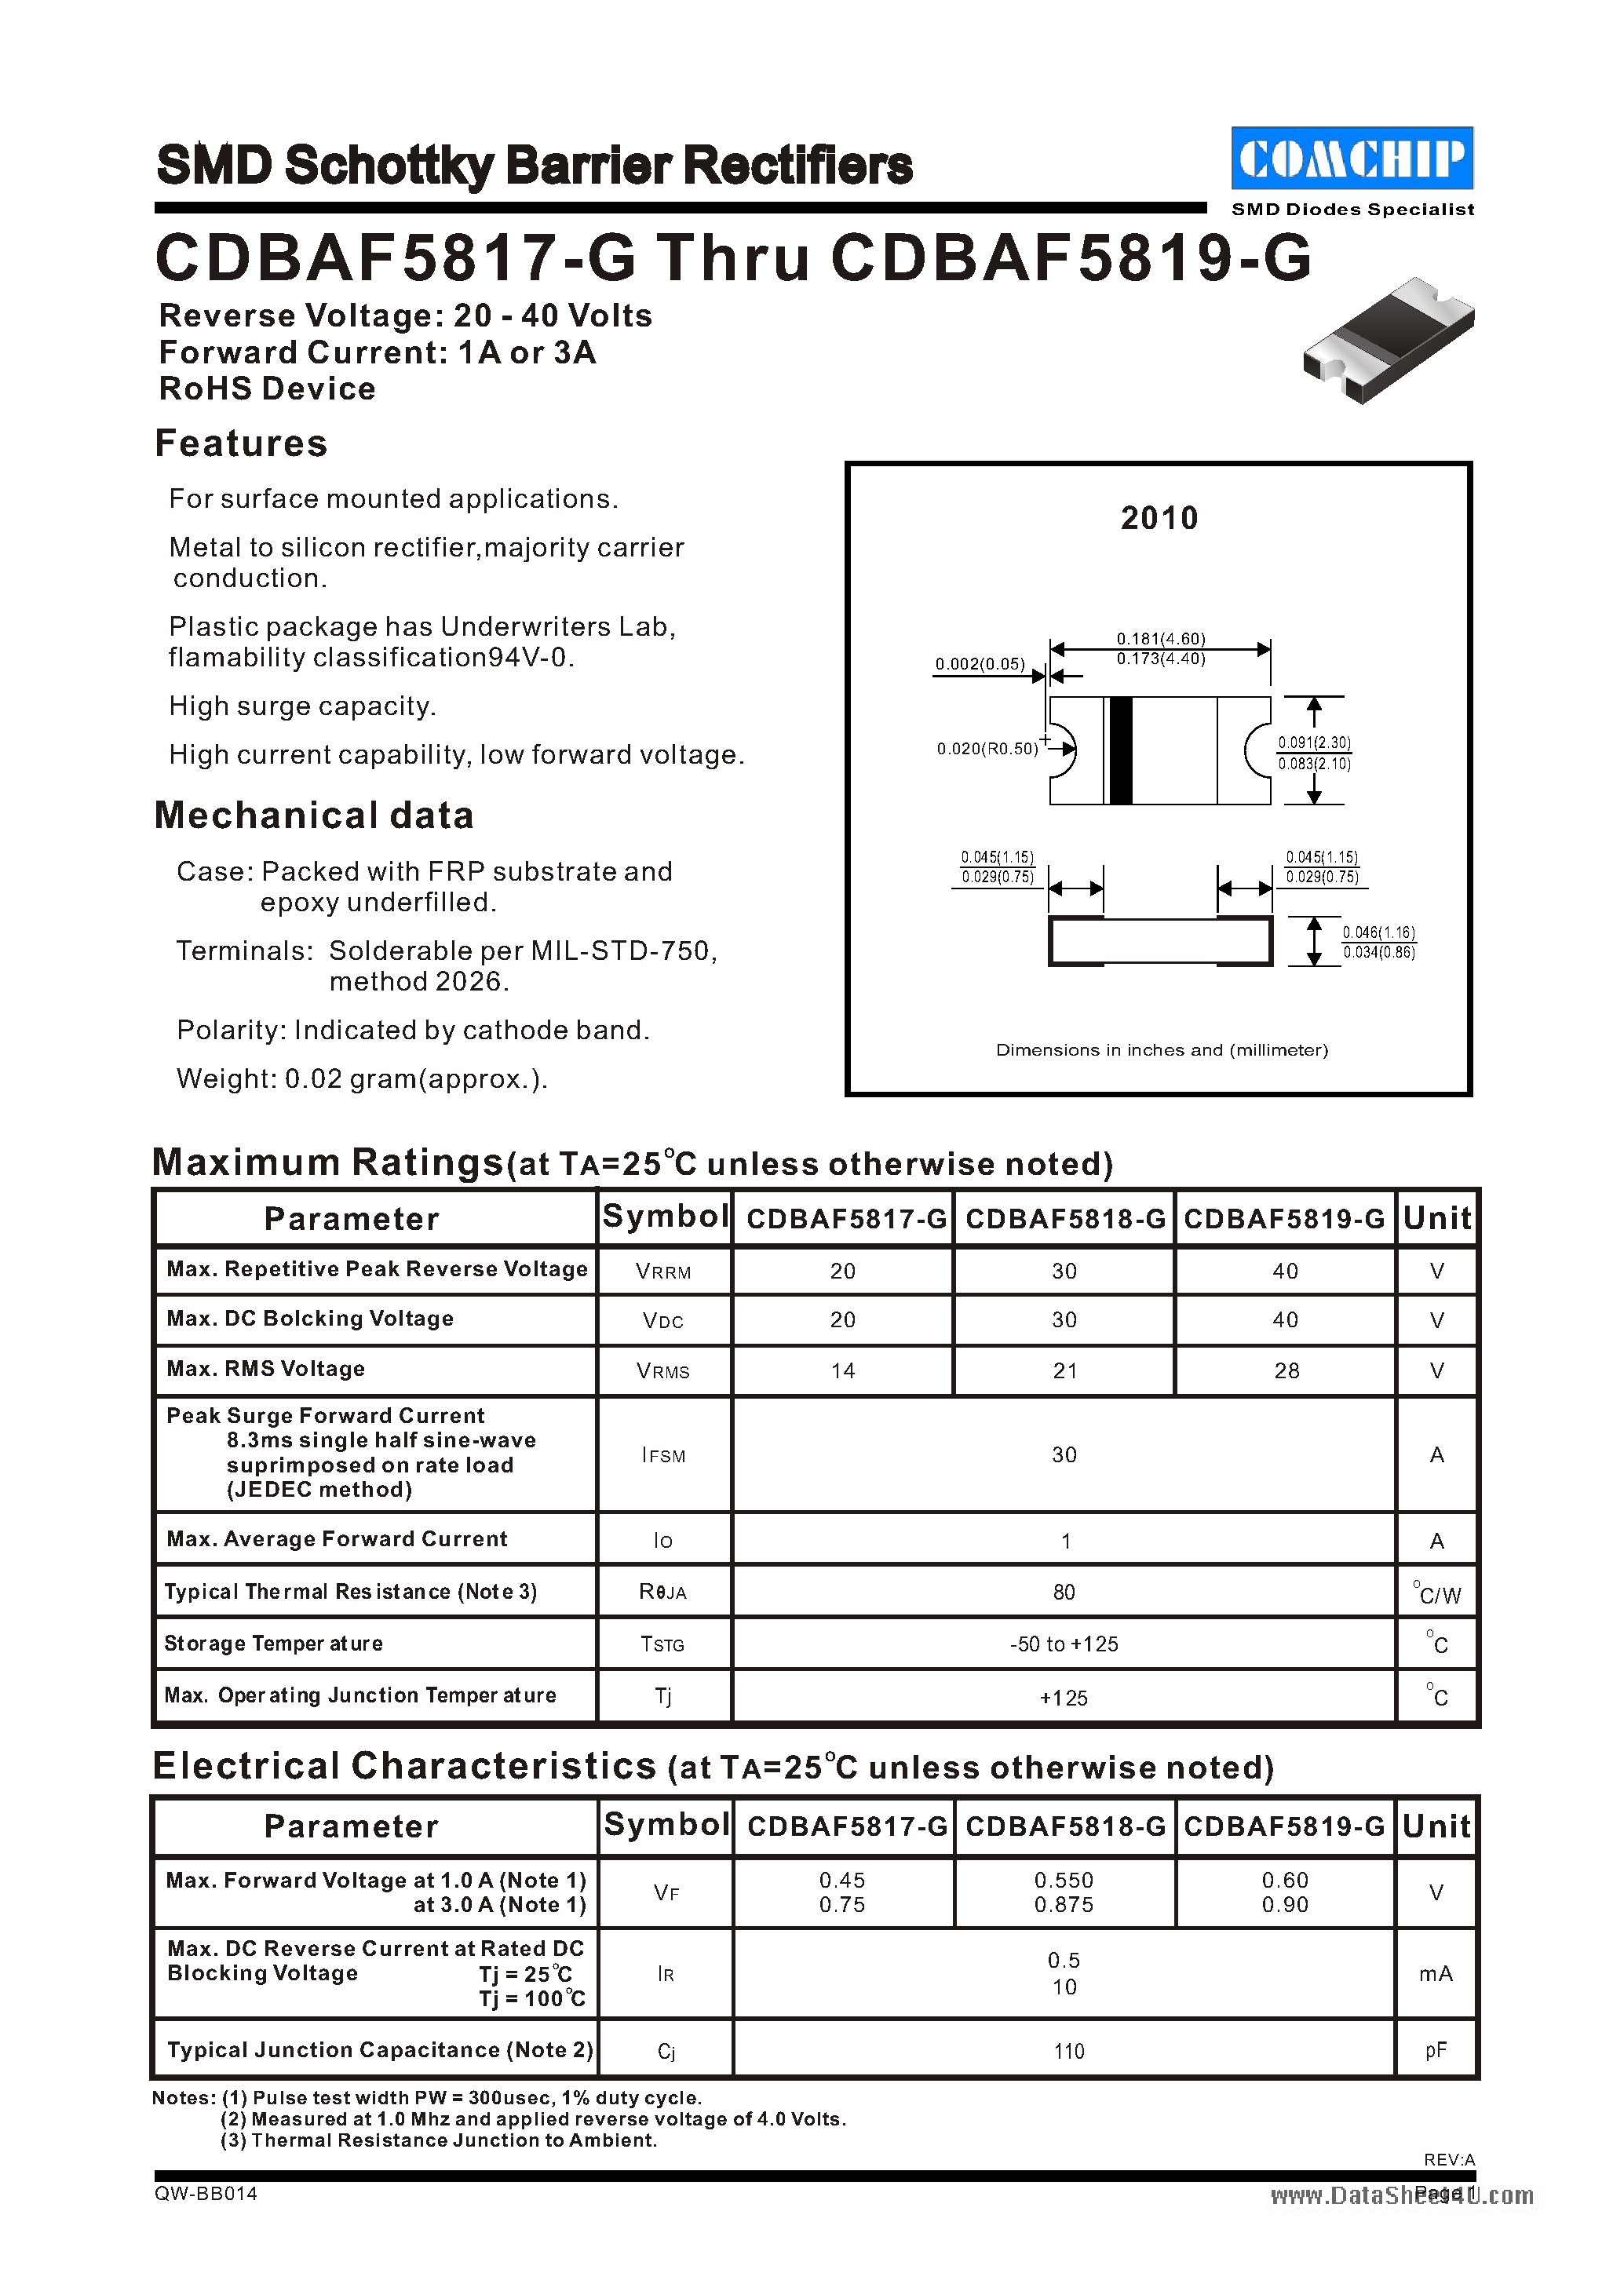 Даташит CDBAF5817-G - (CDBAF5817-G - CDBAF5819-G) SMD Schottky Barrier Rectifiers страница 1